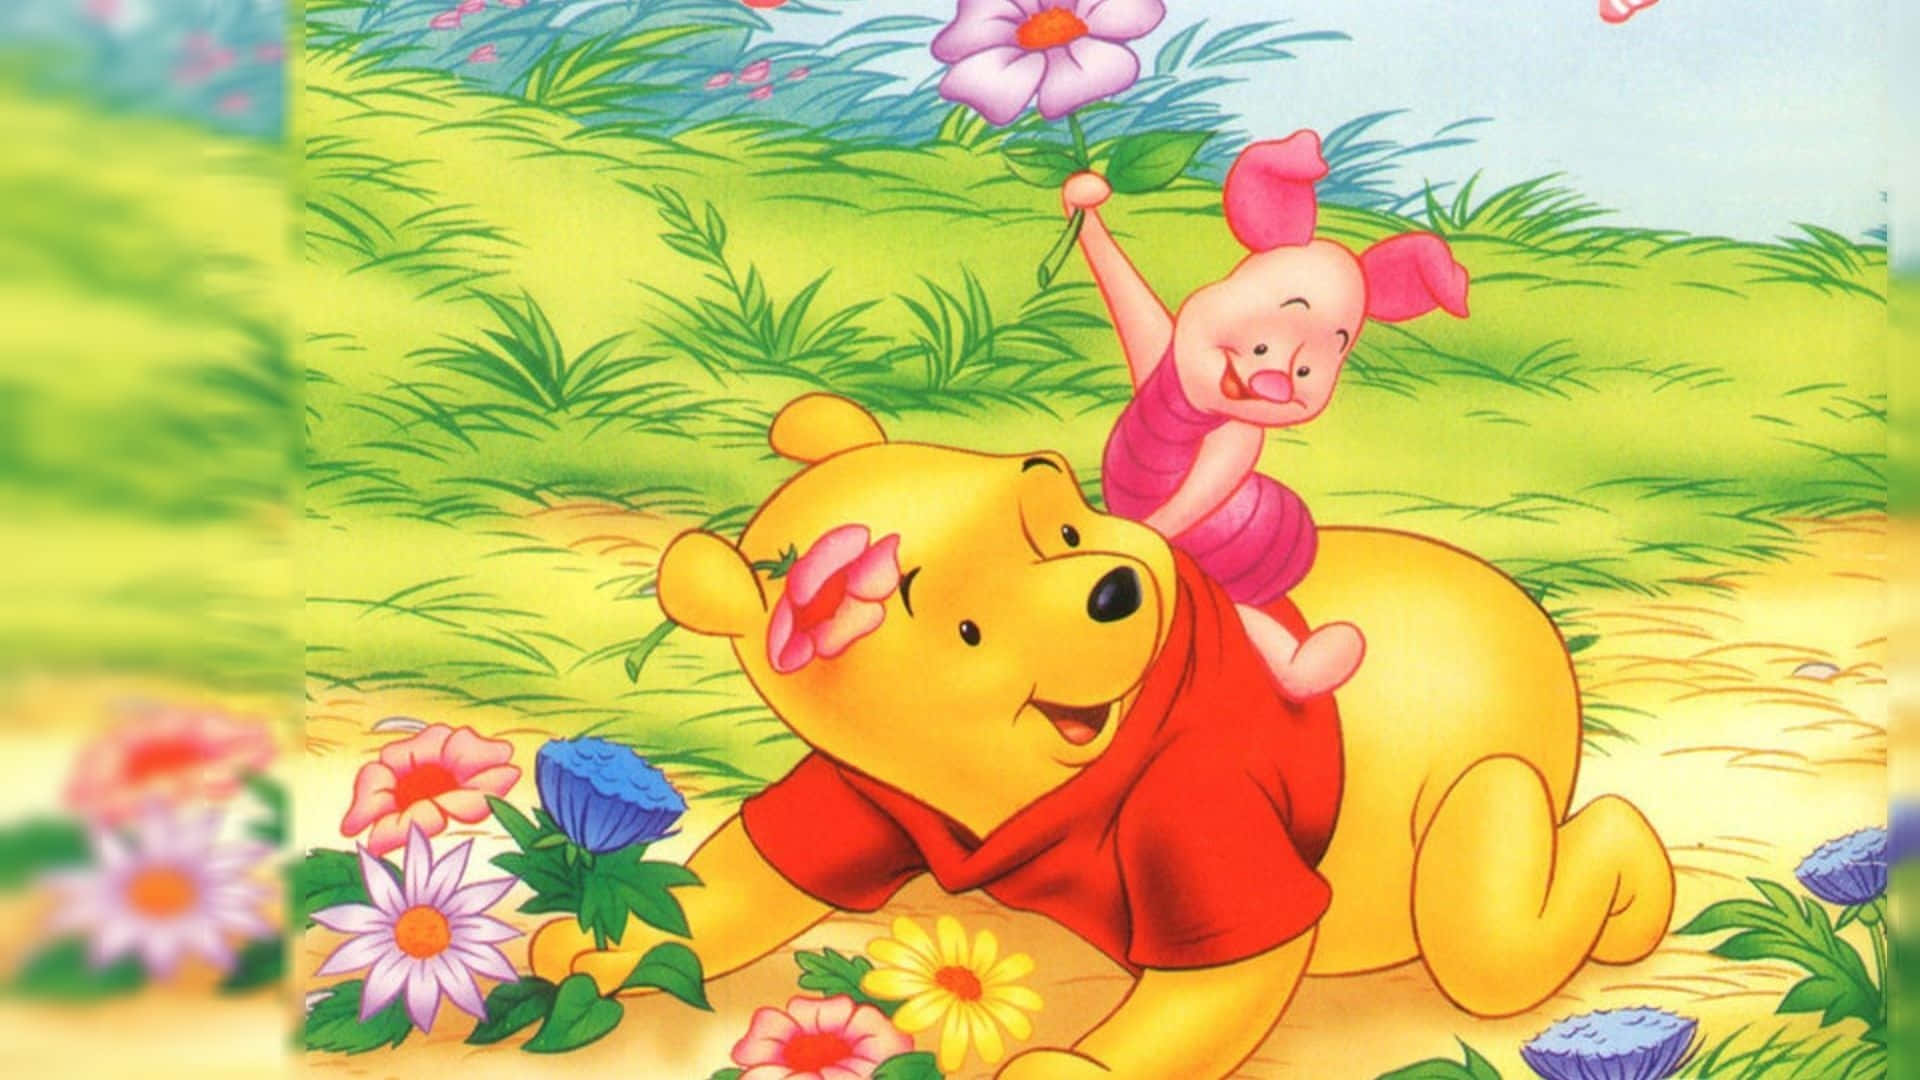 Capturara Alegria Da Infância Com O Winnie The Pooh Na Tela De Fundo Do Seu Computador Ou Celular. Papel de Parede